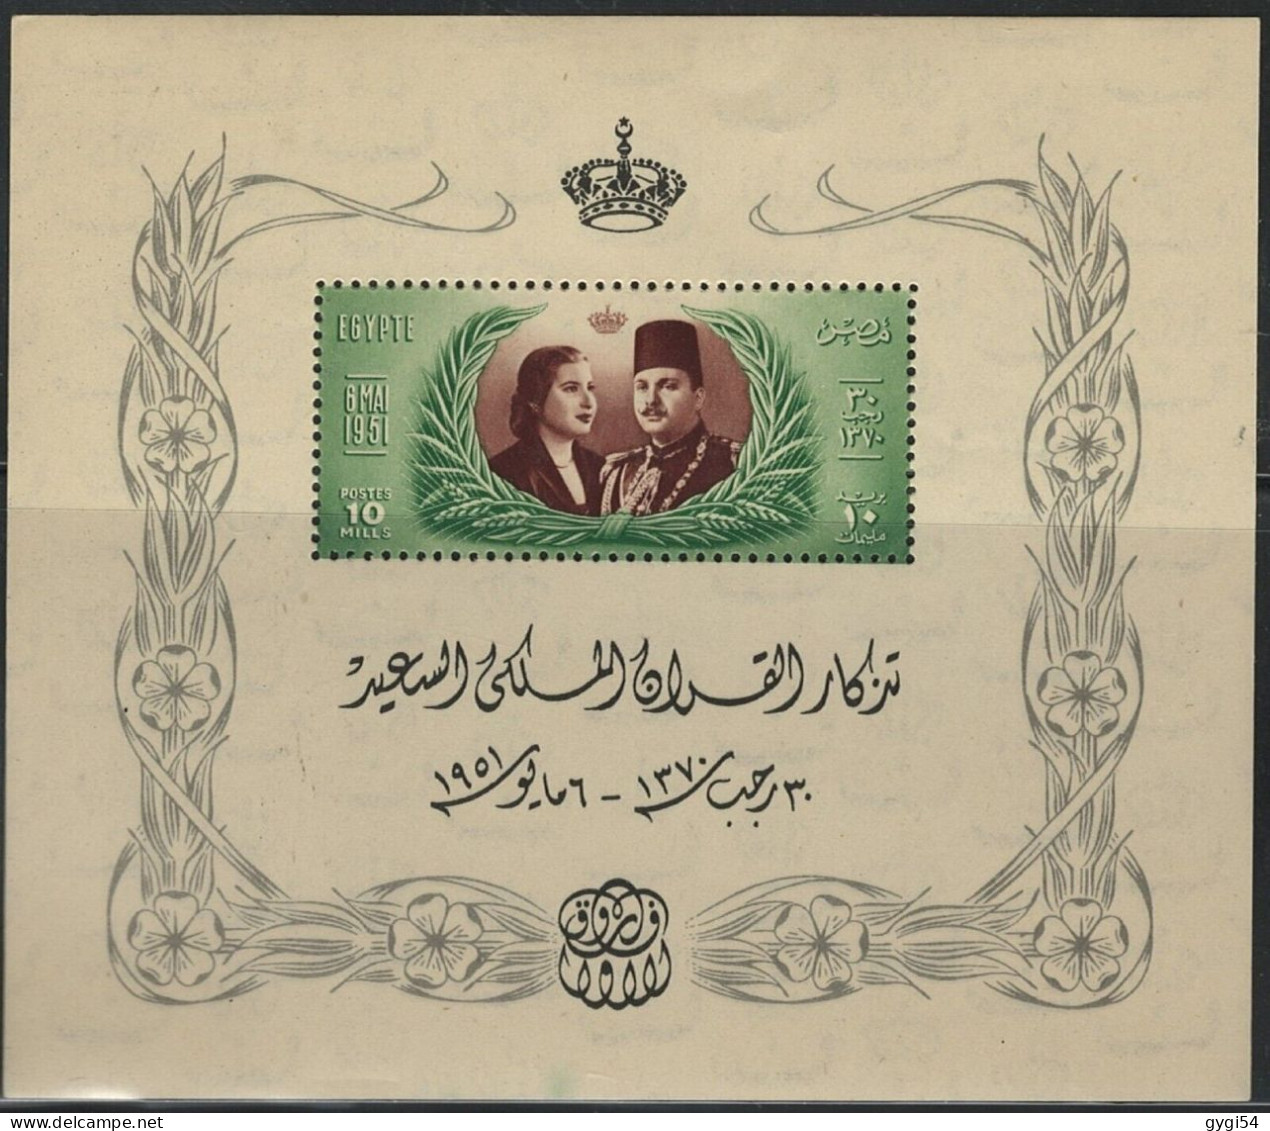 EGYPTE-1951 2   MARIAGE DU ROI FAROUK-NAREMAN-FEUILLE SOUVENIR-MNH - Hojas Y Bloques